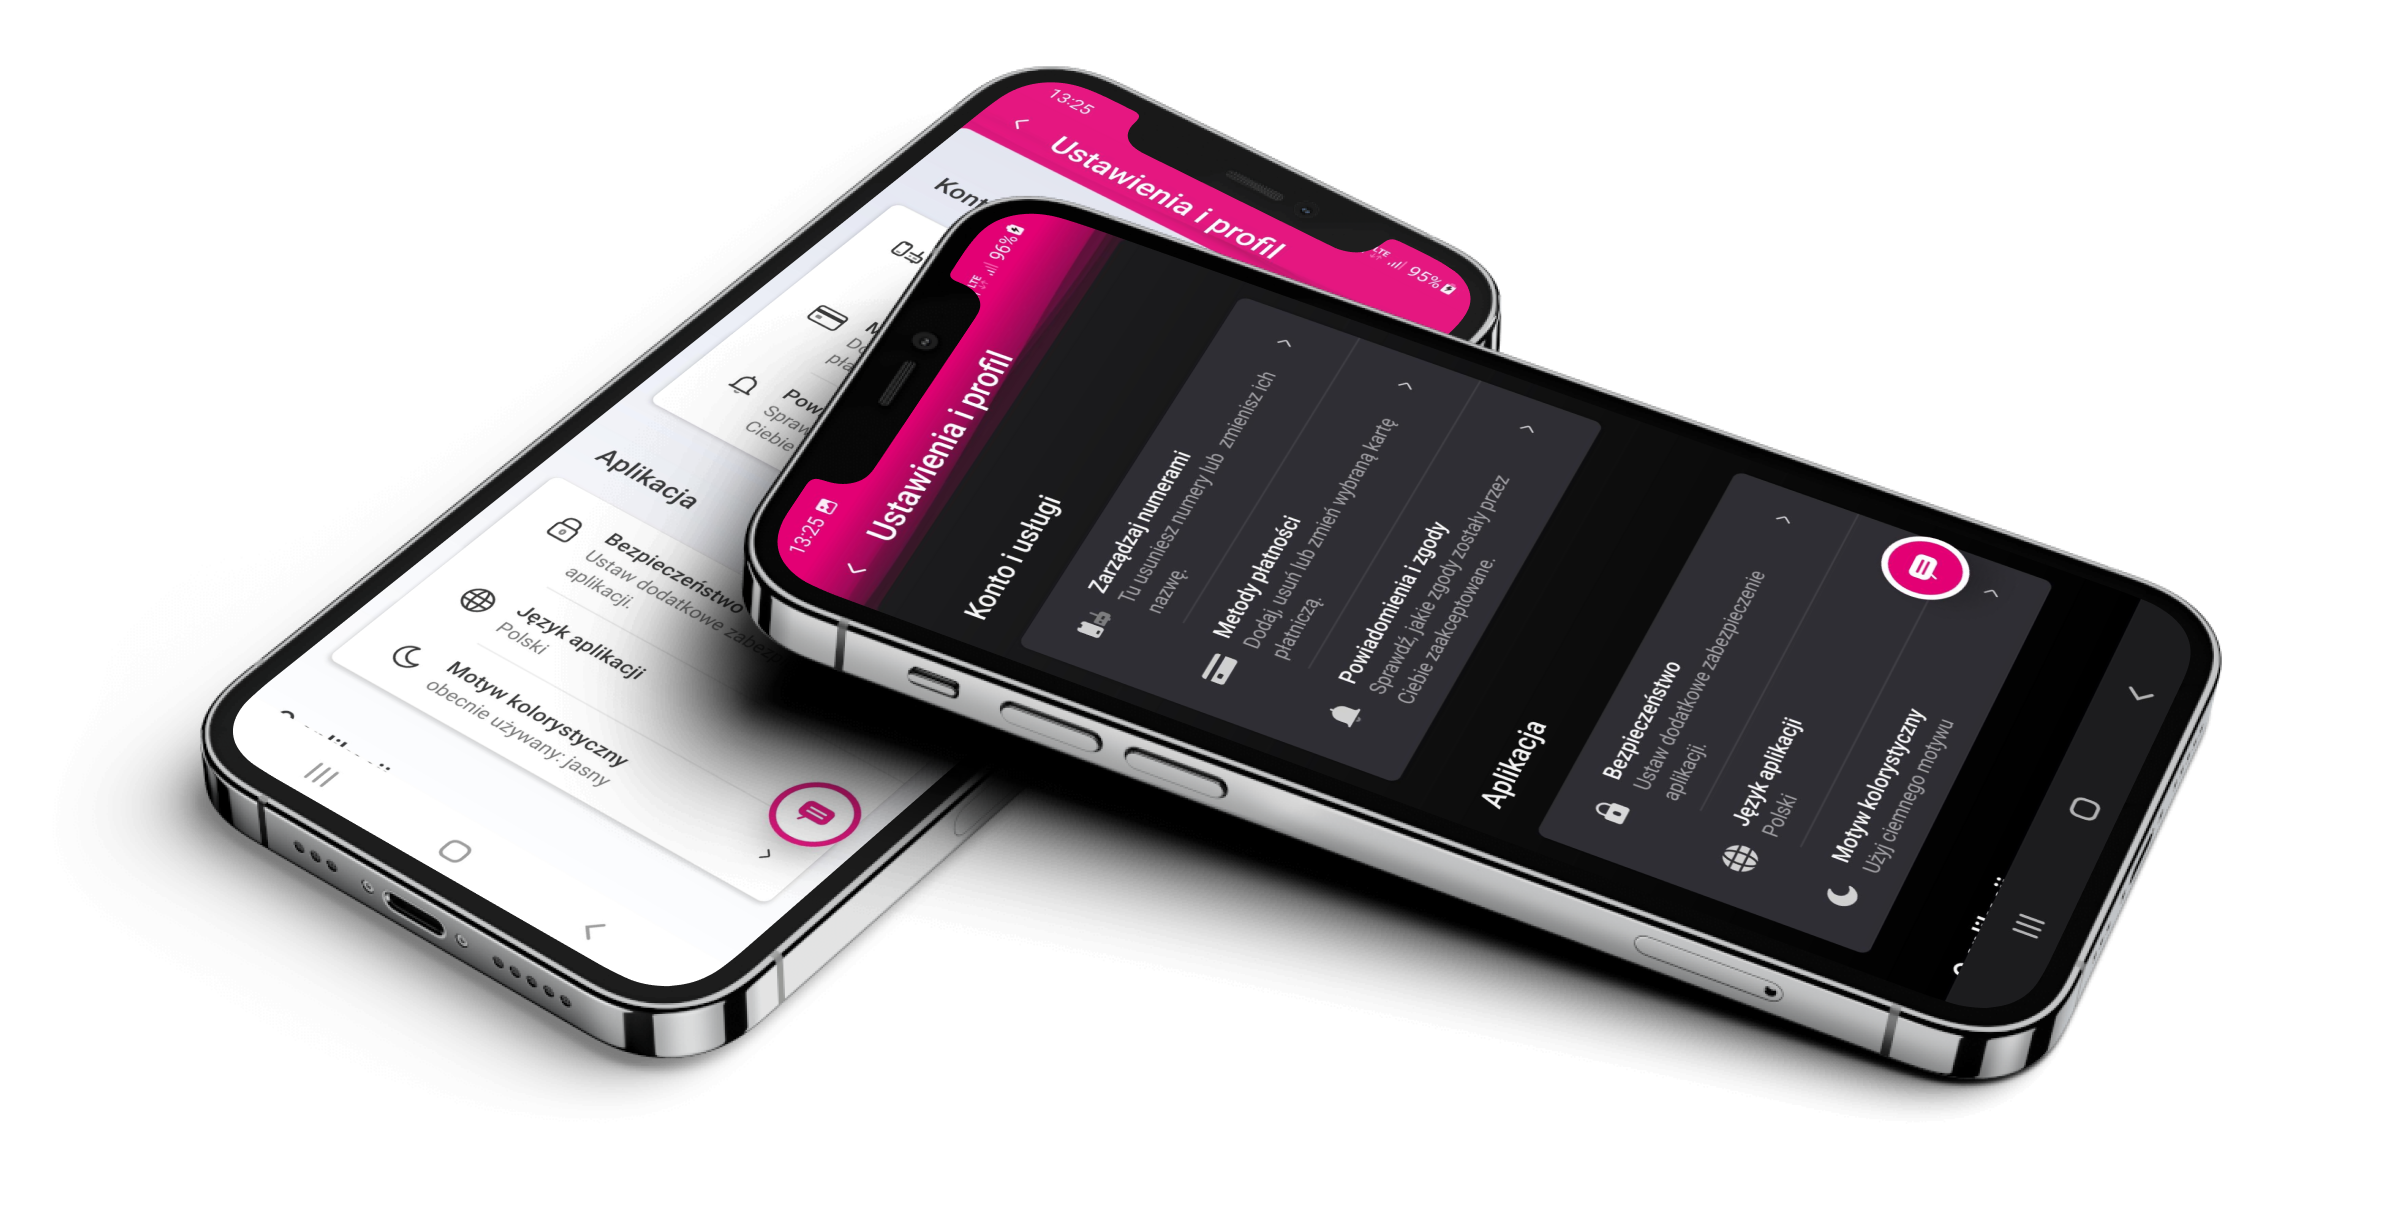 Aplikacja Mój T-Mobile dostępna w dwóch motywach - tradycyjnym i ciemnym